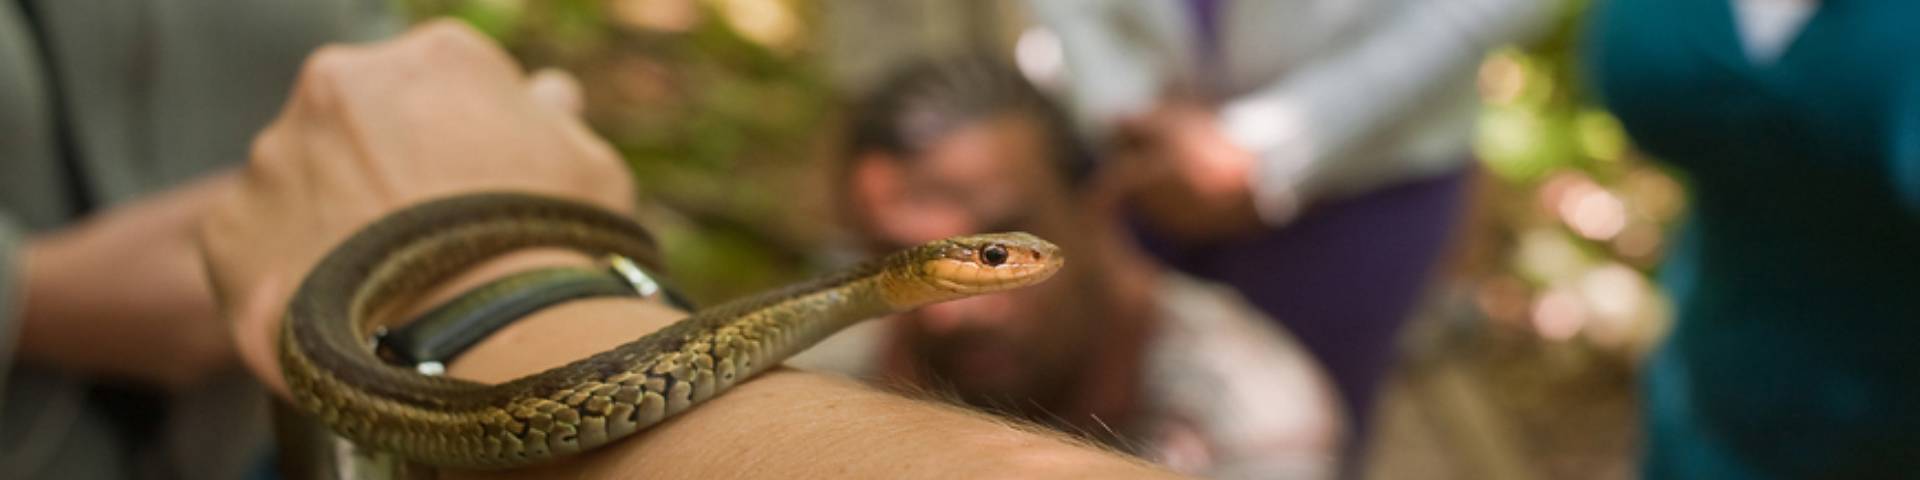 Un petit serpent sur le bras d'une personne